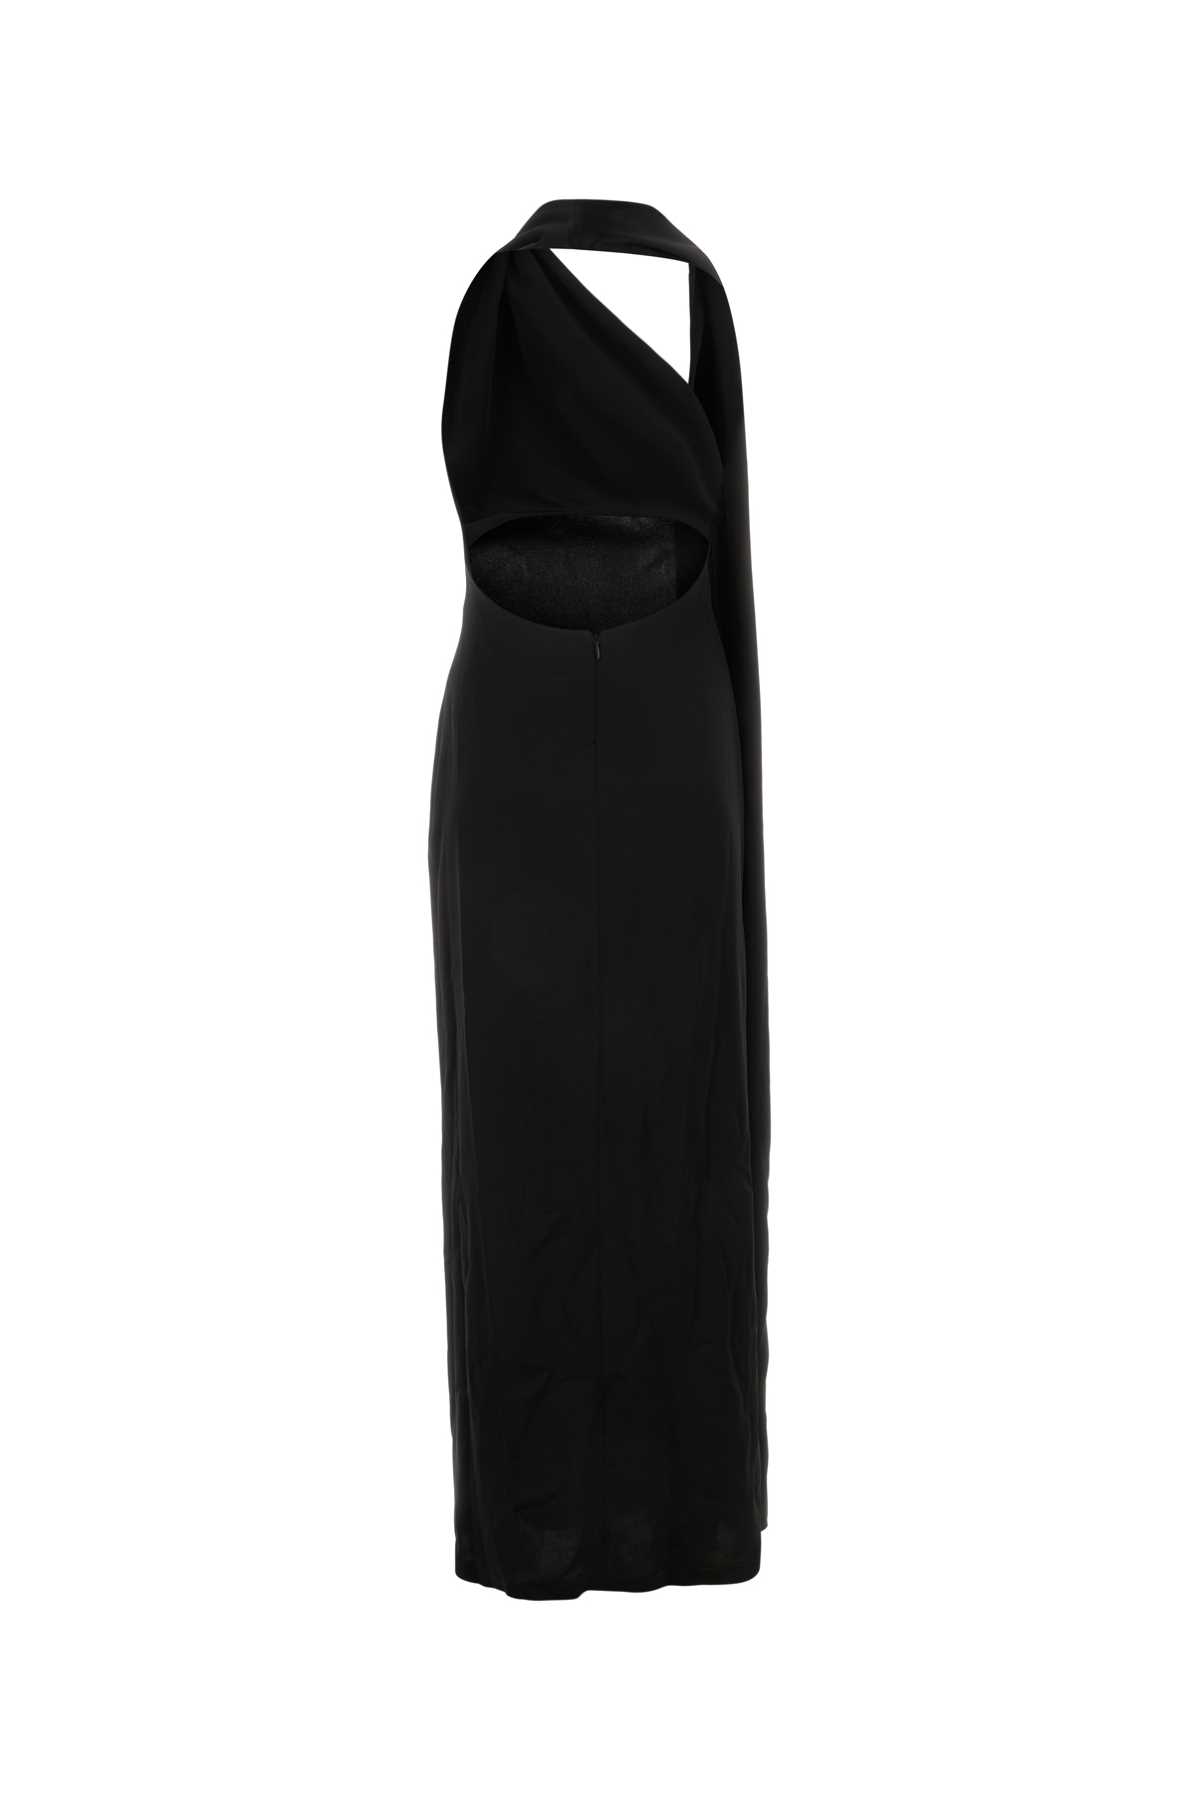 Shop Loewe Black Satin Long Dress